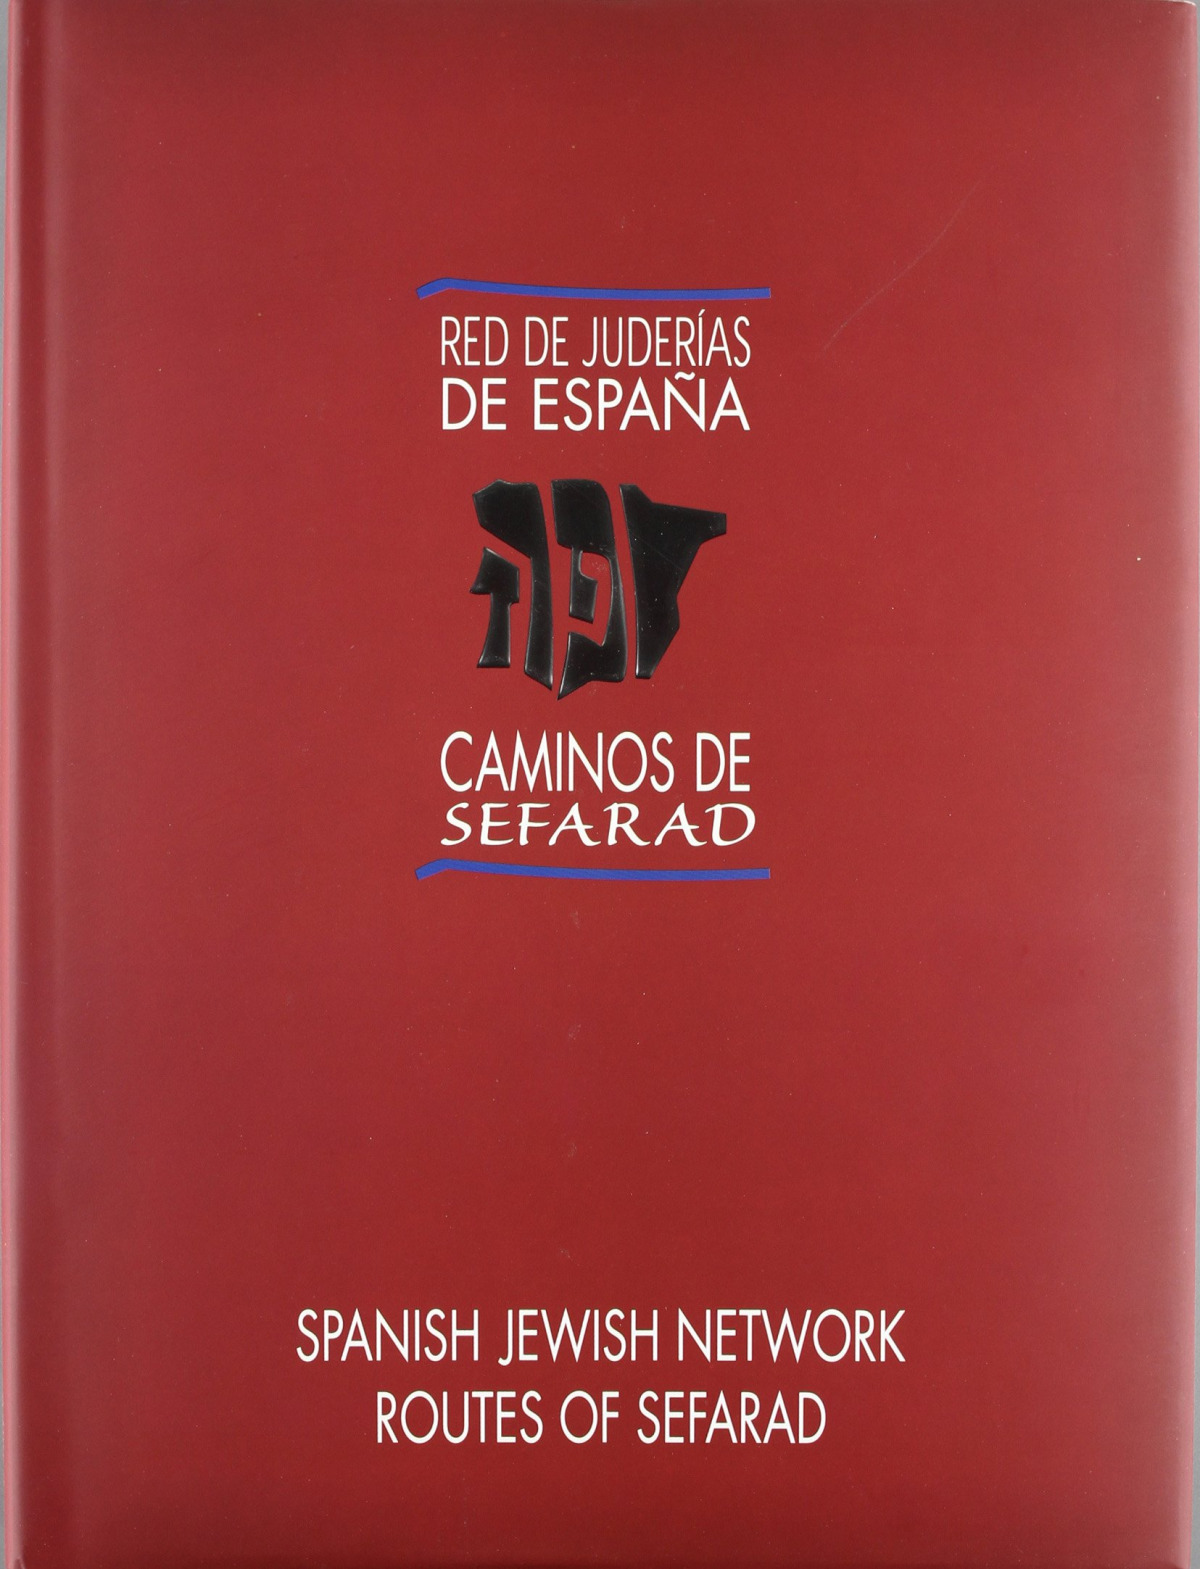 Red de juderias de espaÑa -bilingue- caminos de sefarad - Vv.Aa